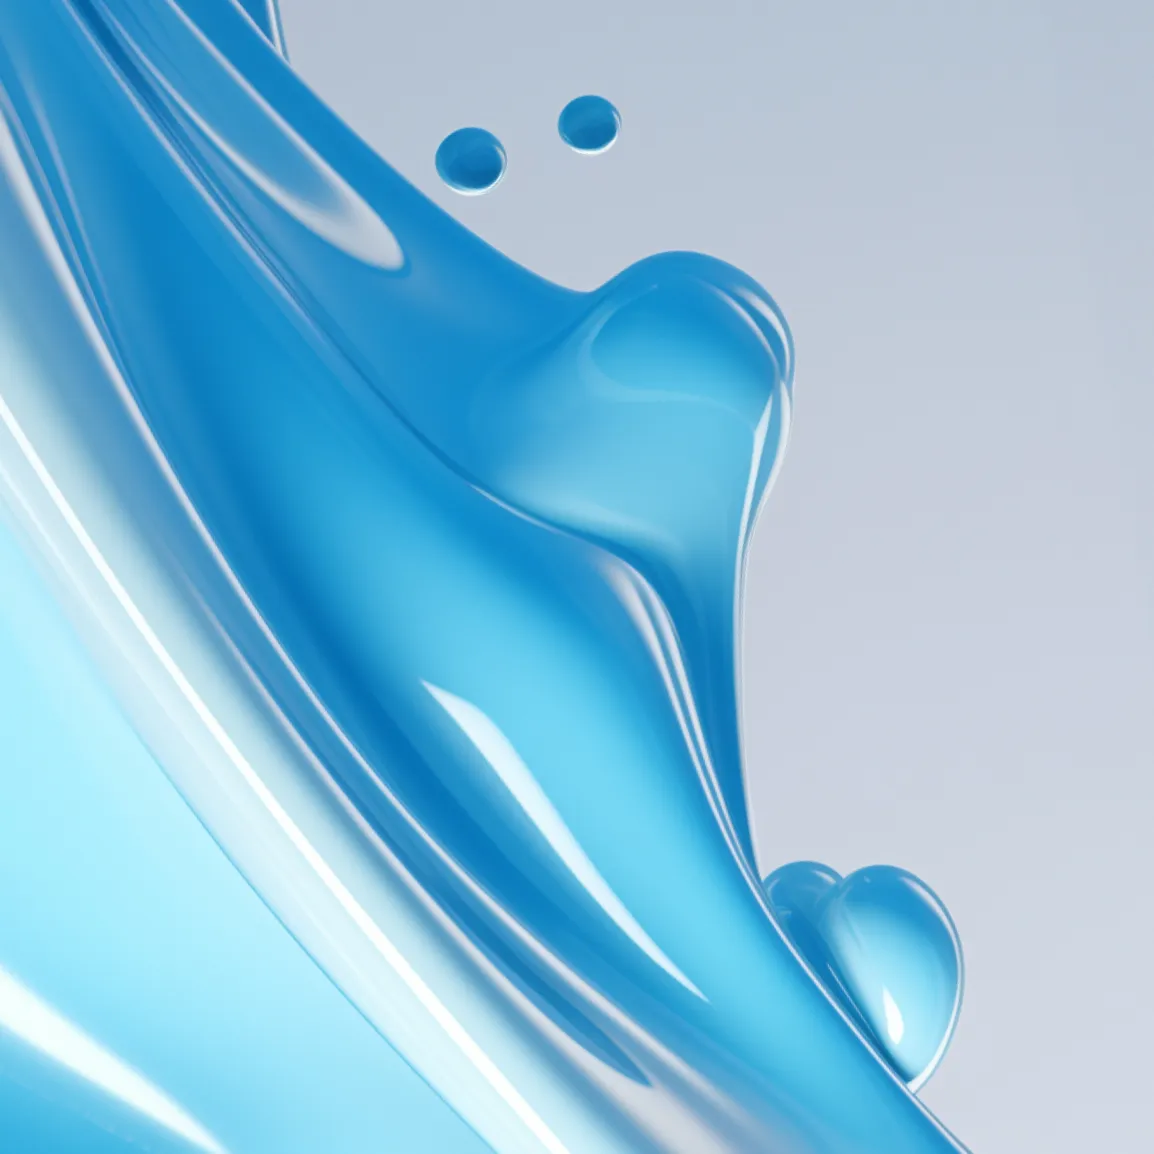 immagine decorativa in azzurro che pare un fluido per ux ui